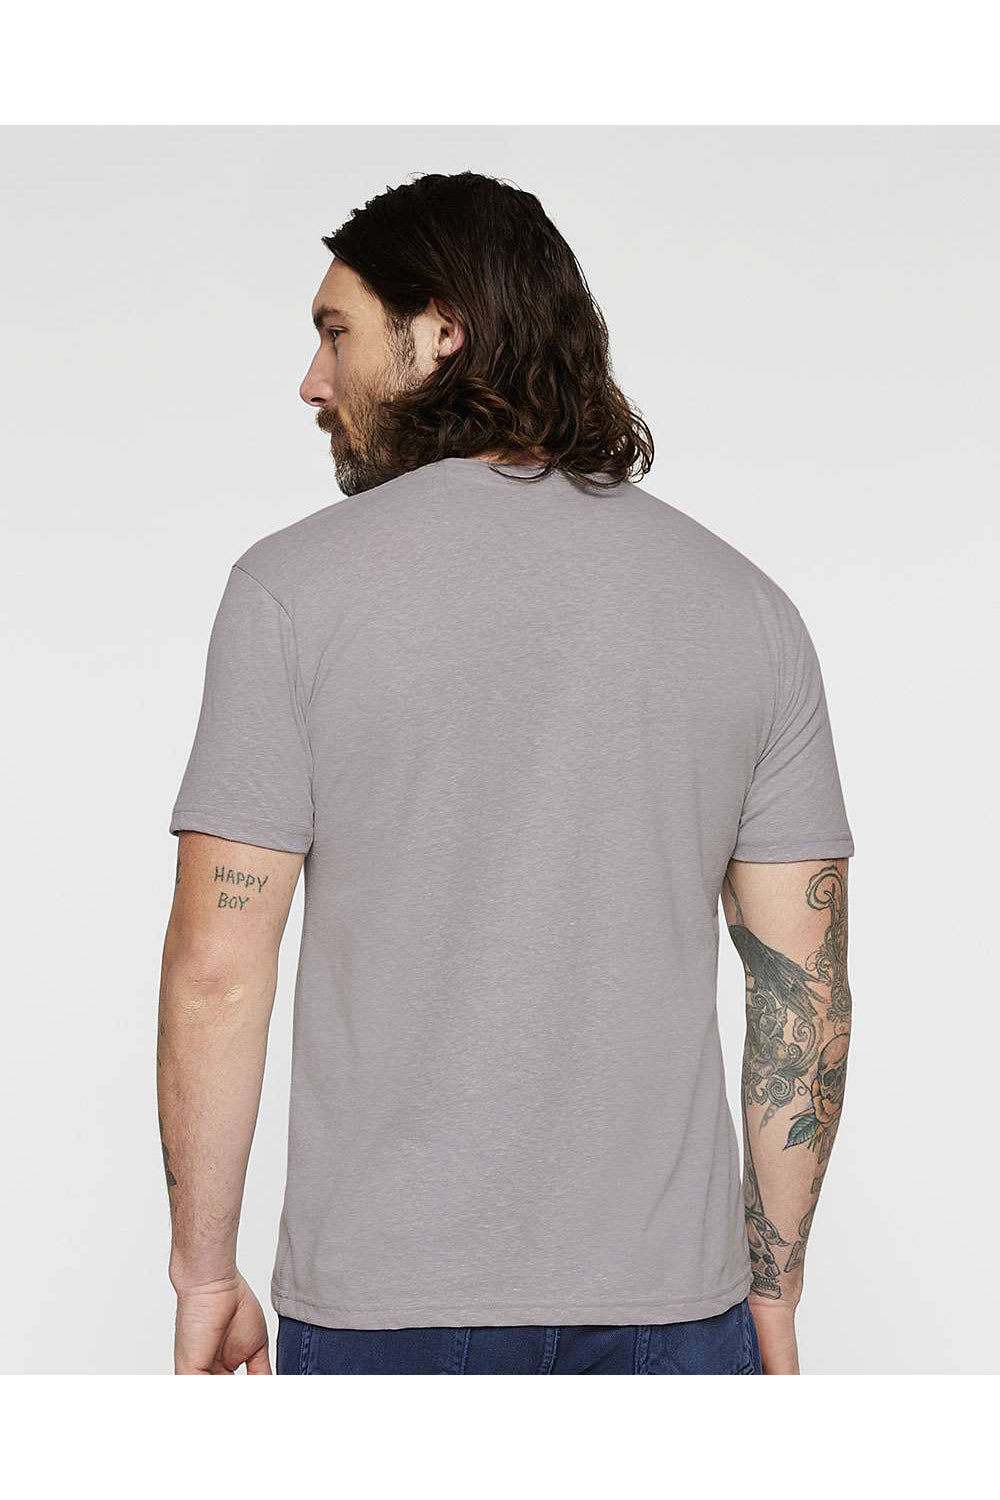 LAT 6991 Mens Harborside Melange Short Sleeve Crewneck T-Shirt Grey Model Back